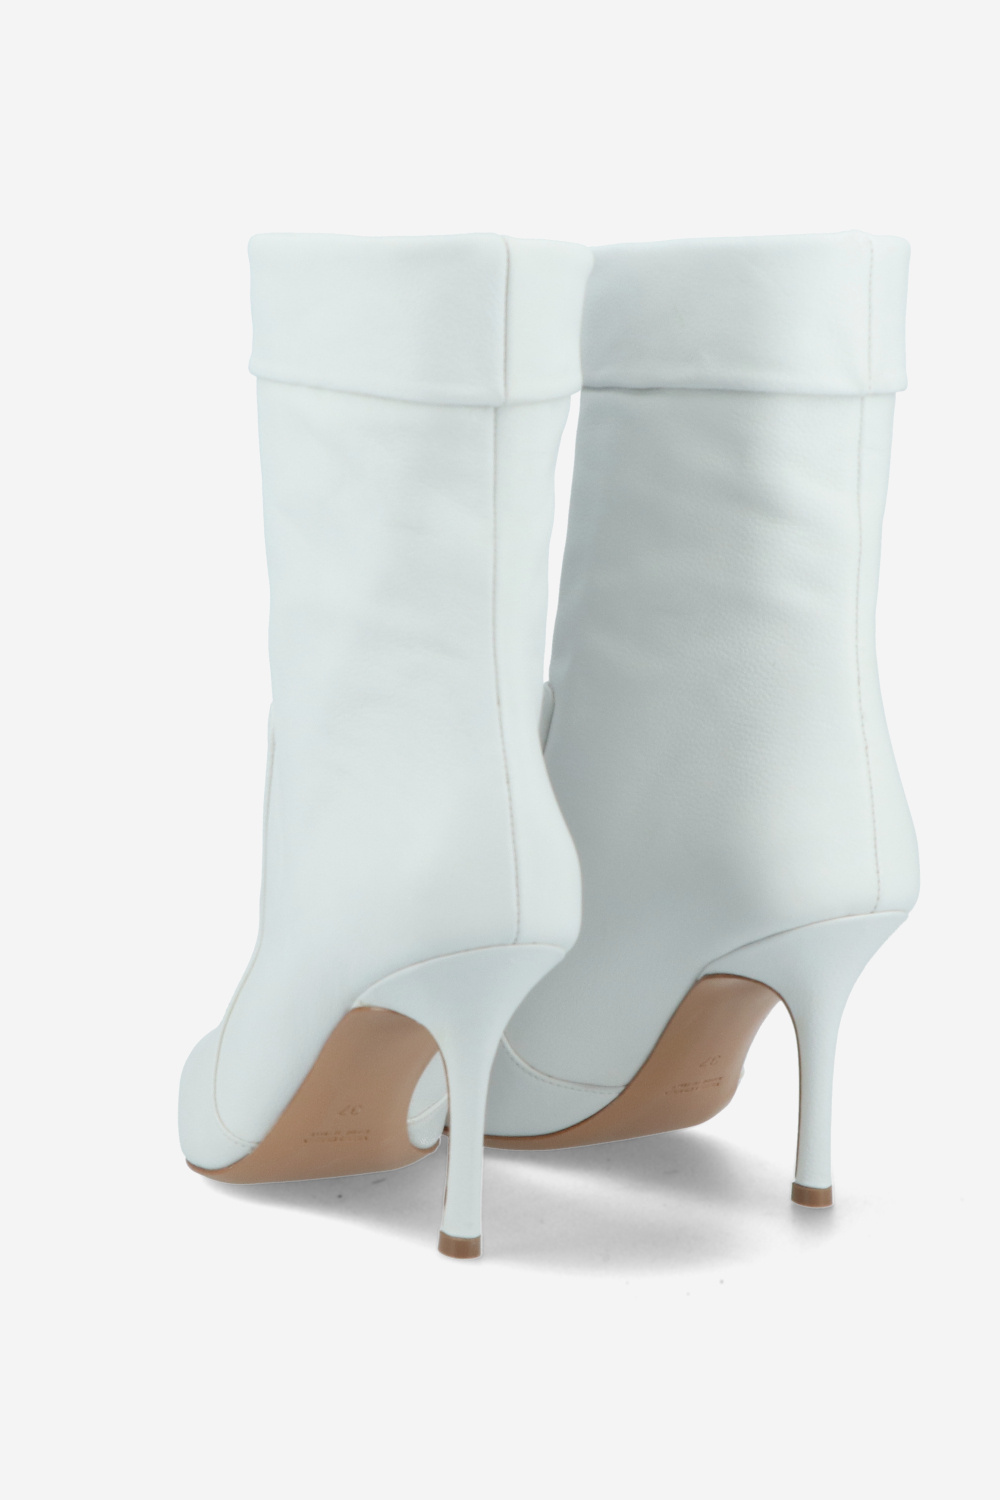 Julia Cerutti Boots White